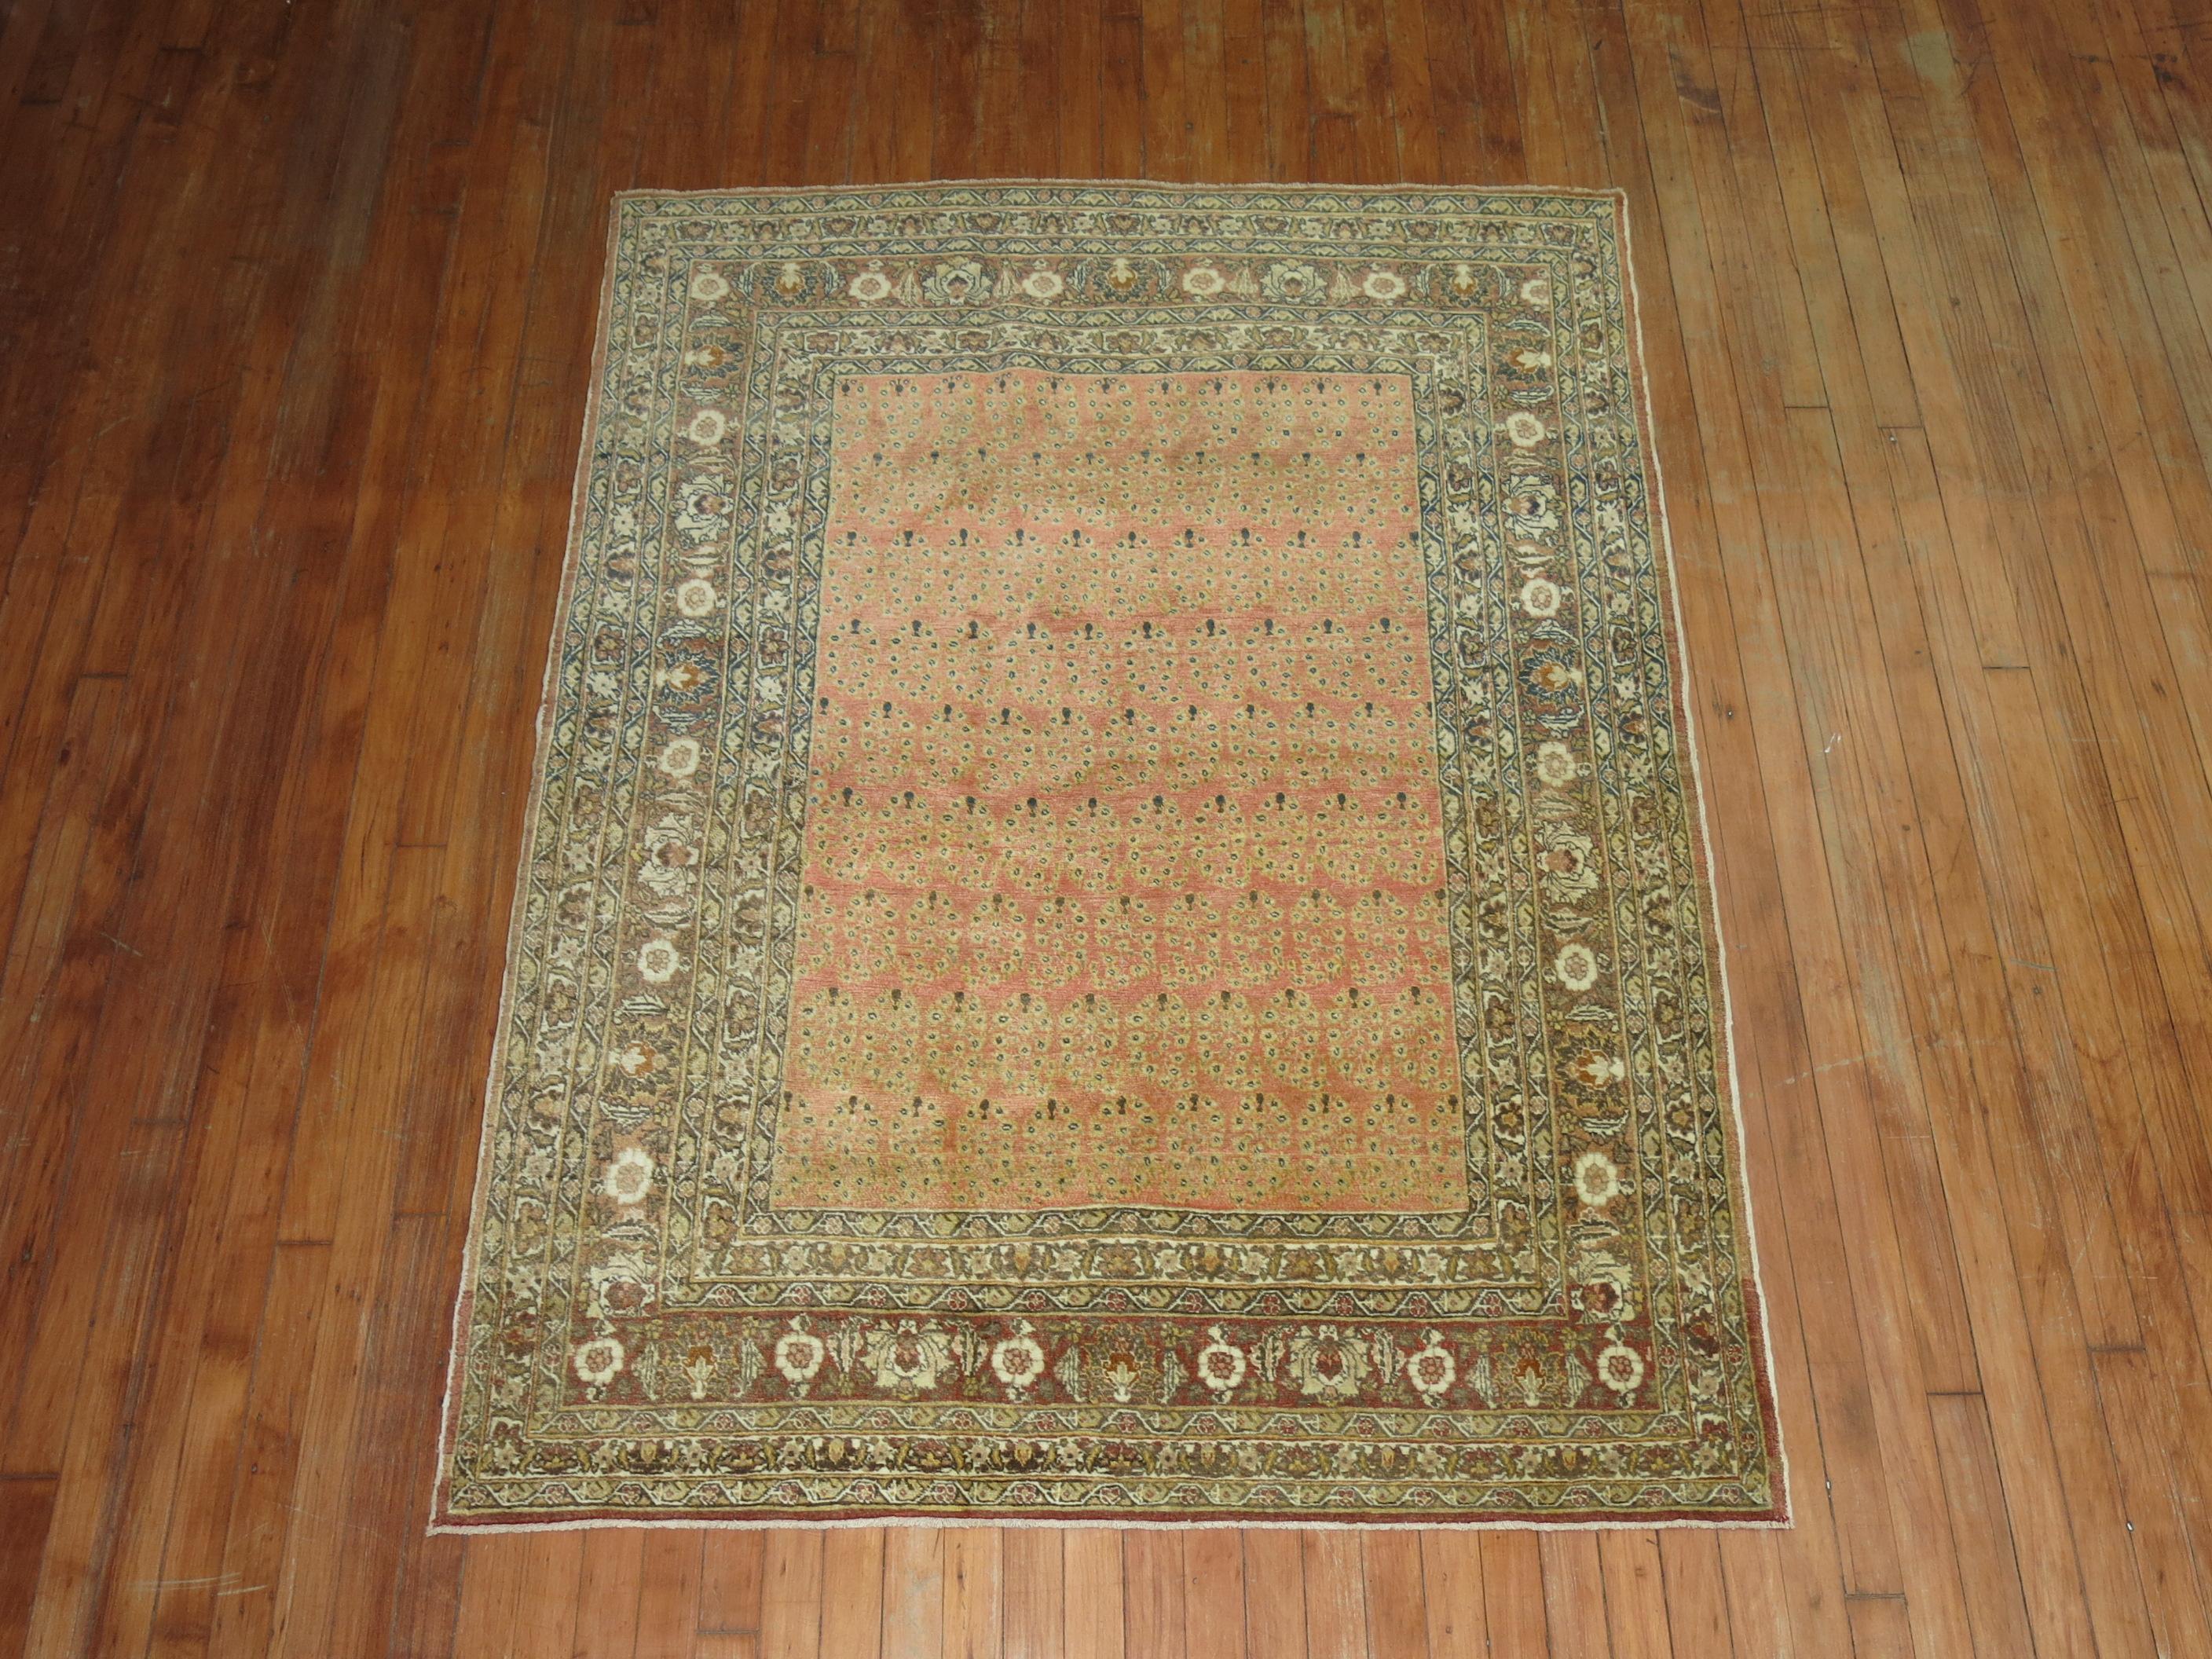 Remarquable tapis persan de Tabriz de la fin du XIXe siècle, tissé par l'atelier Hadji Jalili dans la ville de Tabriz. 

4'6'' x 5'11''

Le nom du maître tisserand, Hadji Jallili, est toujours d'actualité, car il est peut-être le plus important